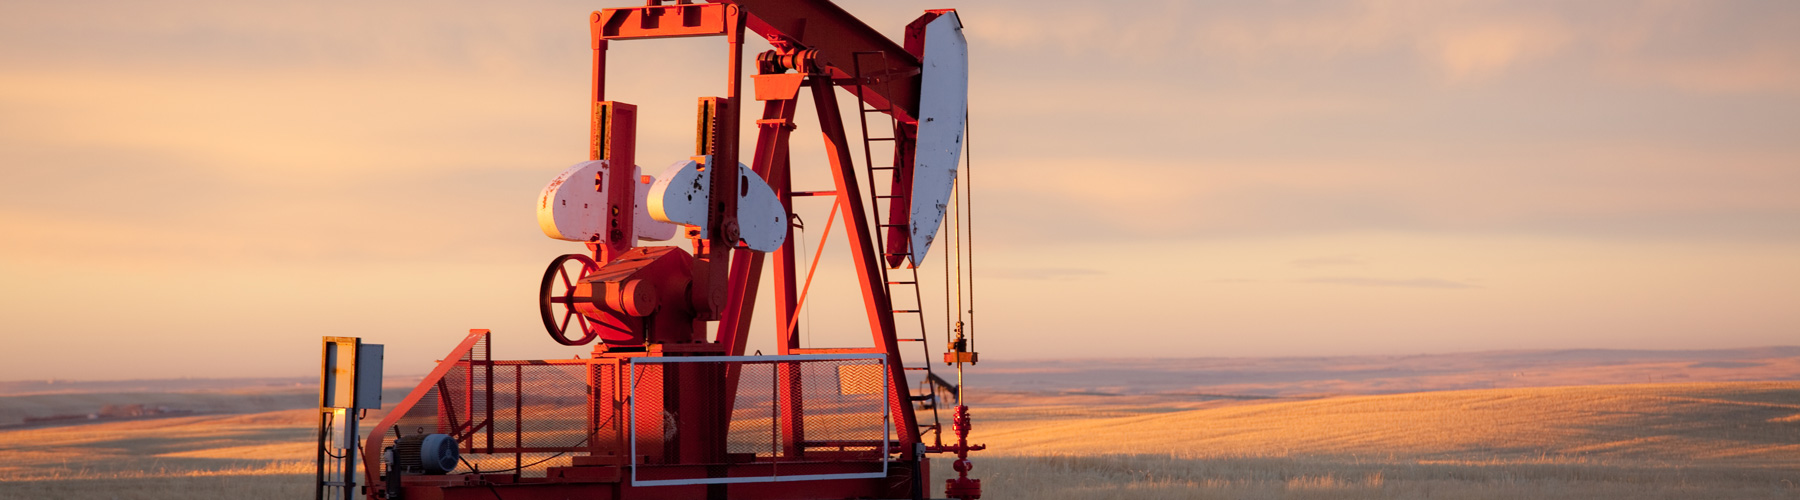 Red Prairie pump jack in oil field